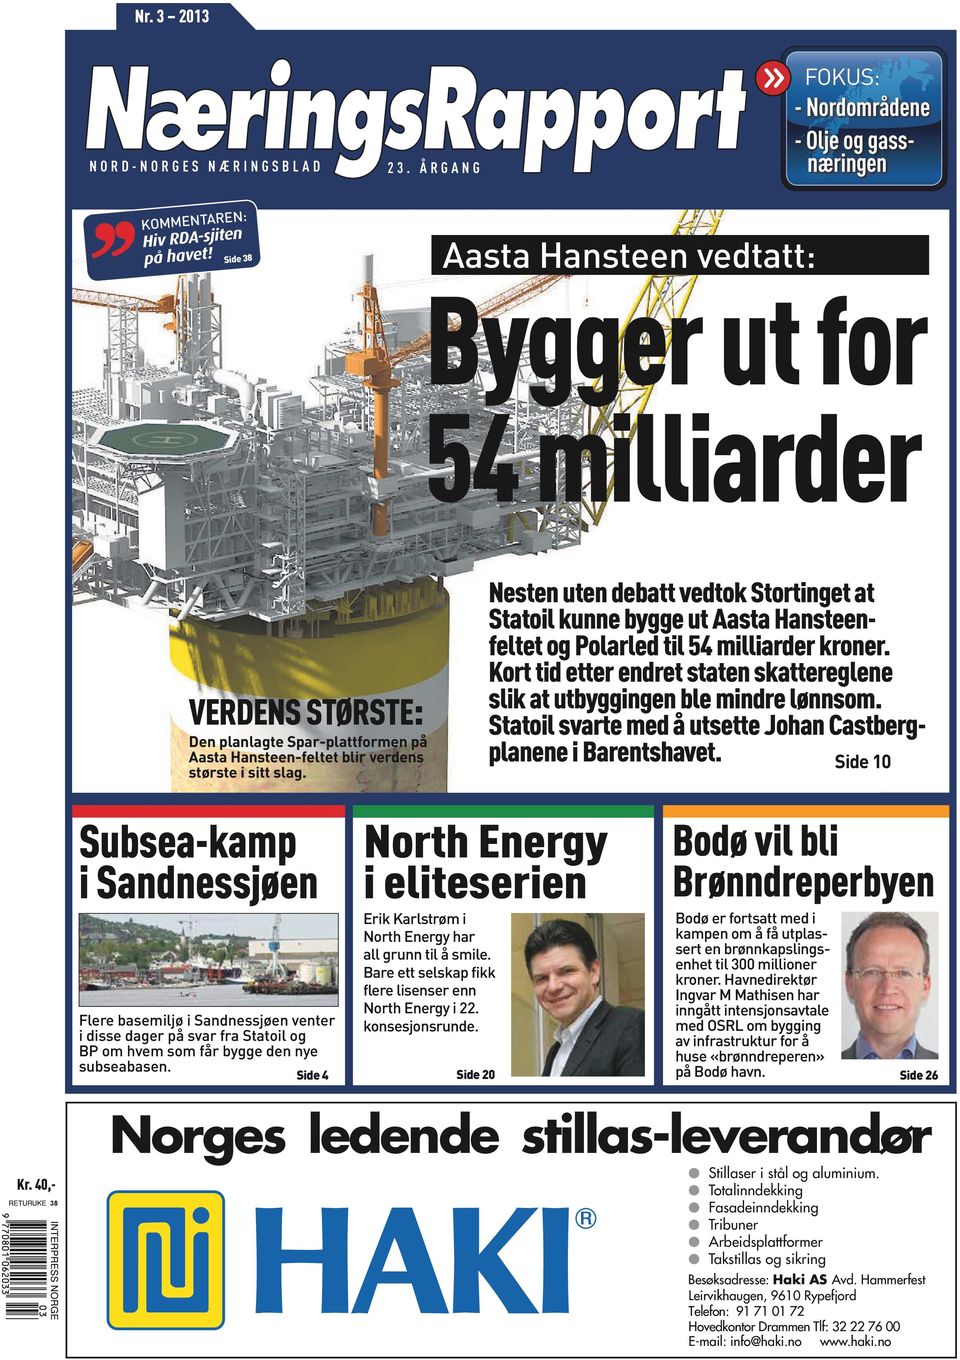 Nesten uten debatt vedtok Stortinget at Statoil kunne bygge ut Aasta Hansteenfeltet og Polarled til 54 milliarder kroner.